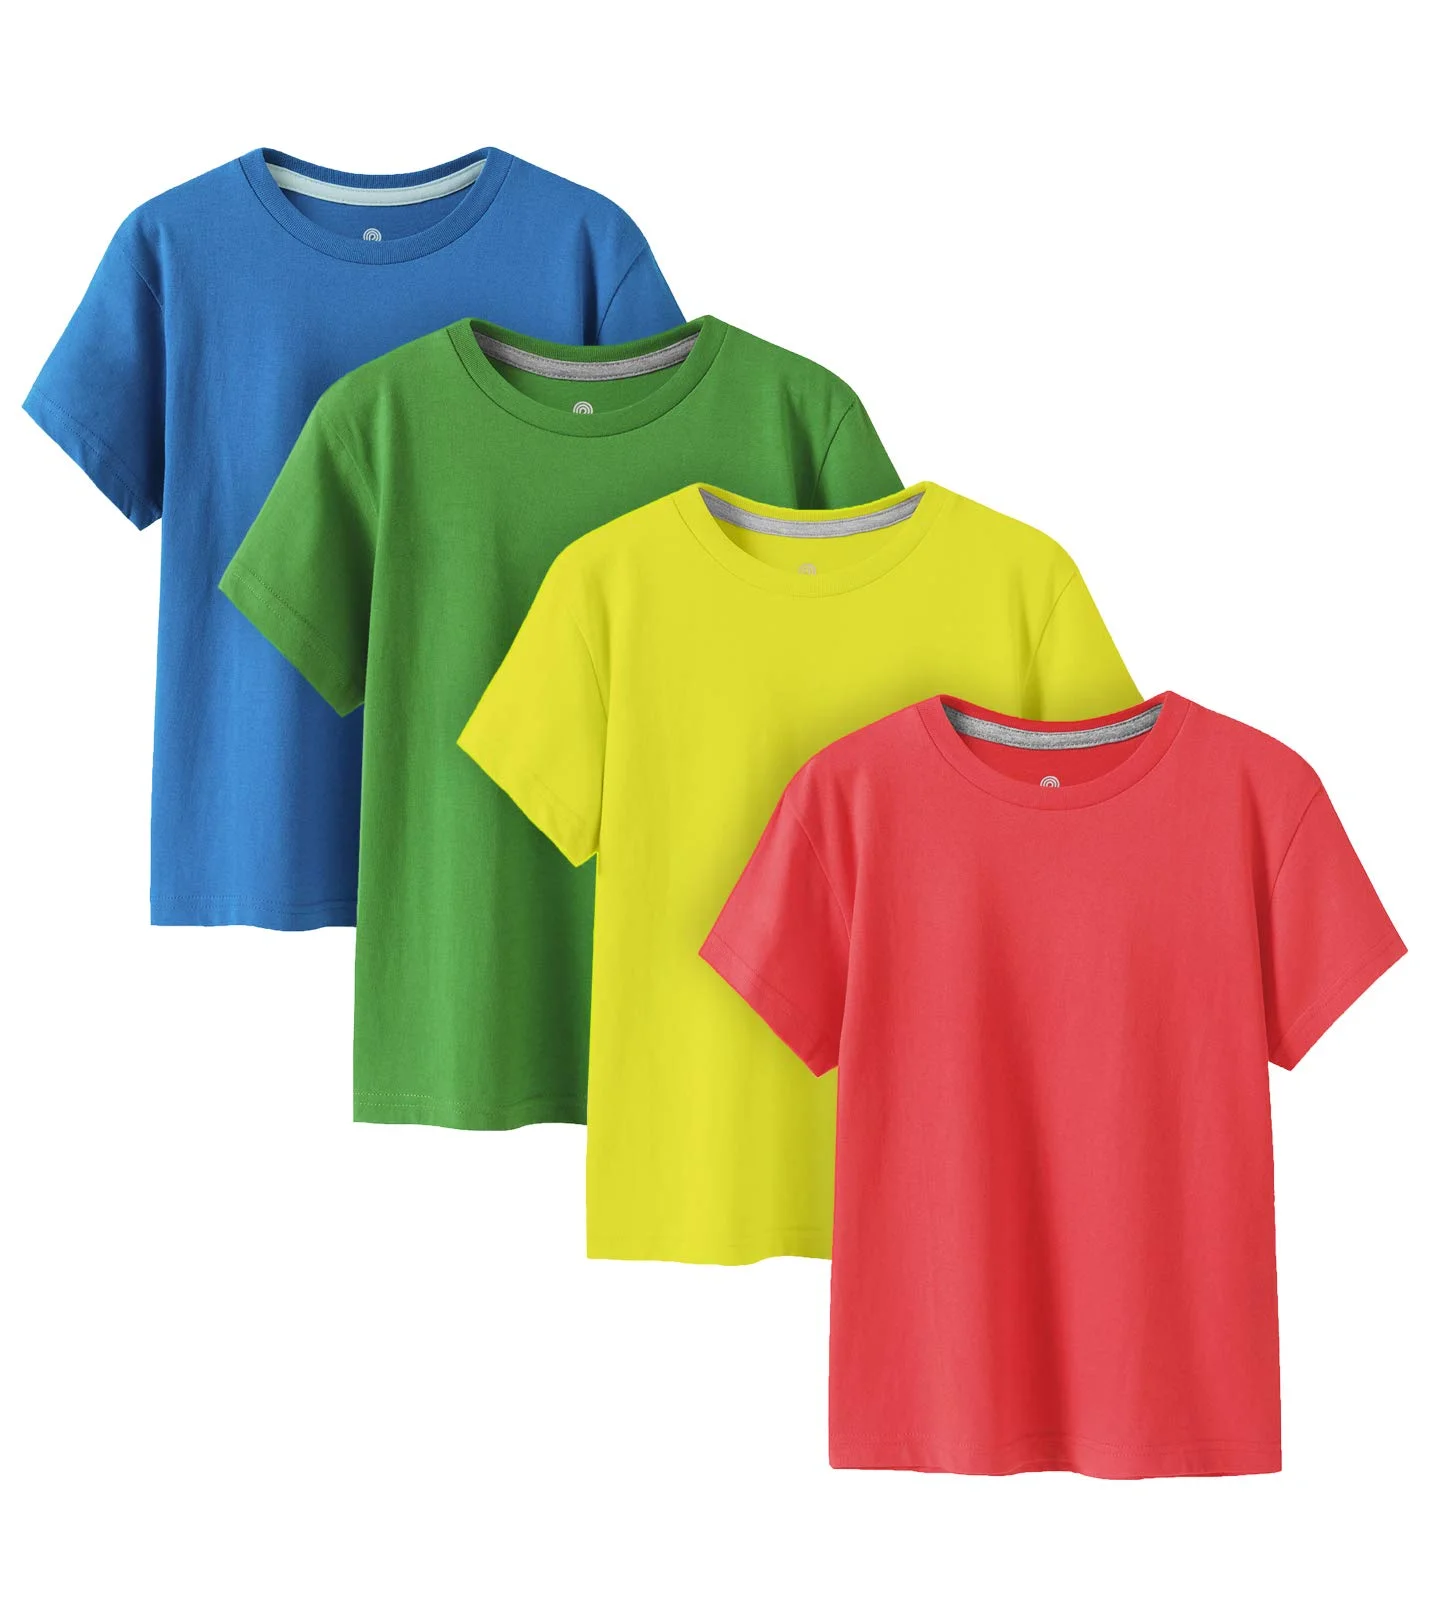 100% Cotton Kids Plain T Shirts Hypoallergenic Tee For Boys Girls Children School Uniform